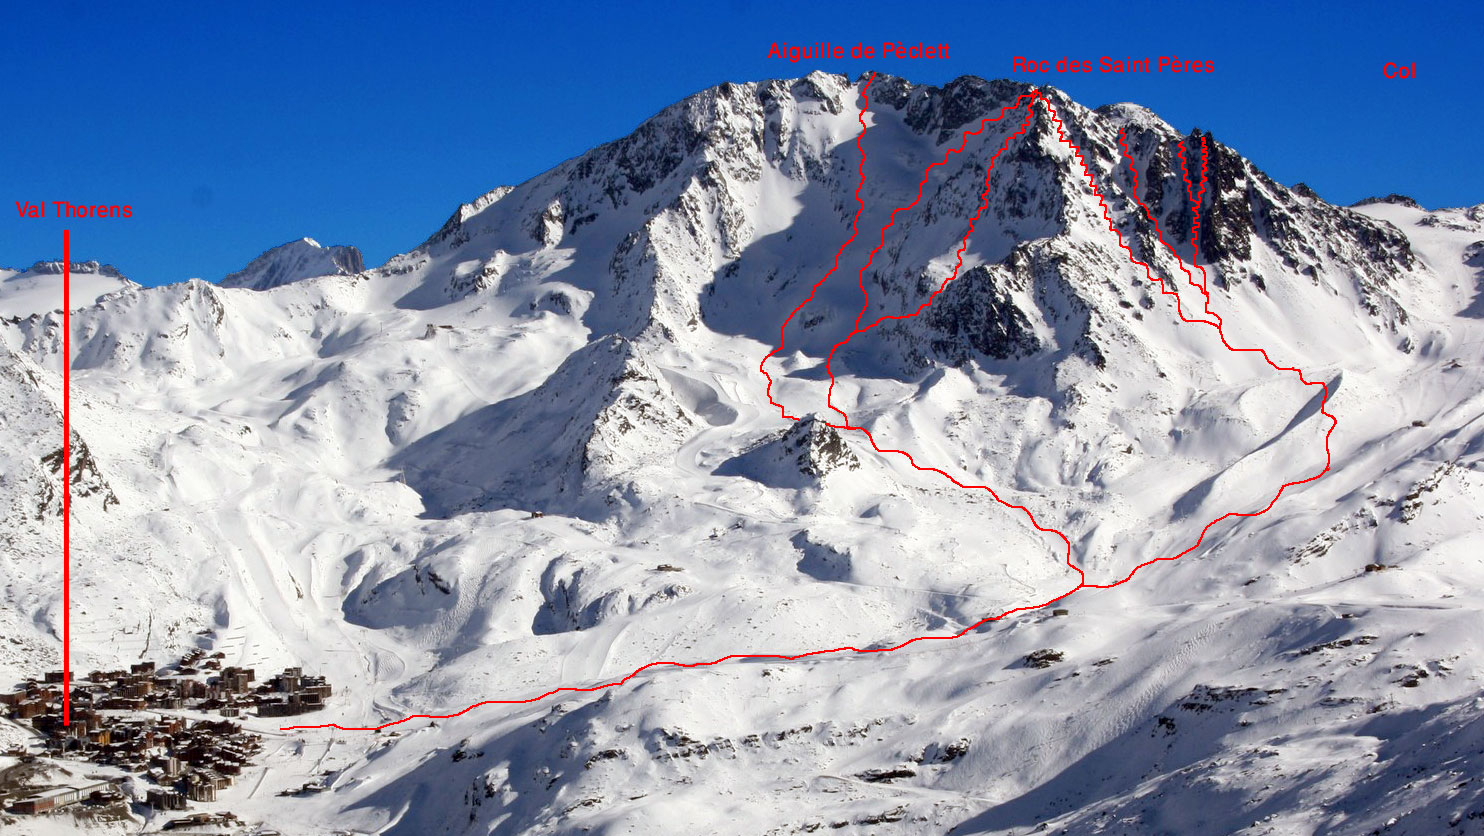 Freeskier rutes on Peclet mountain